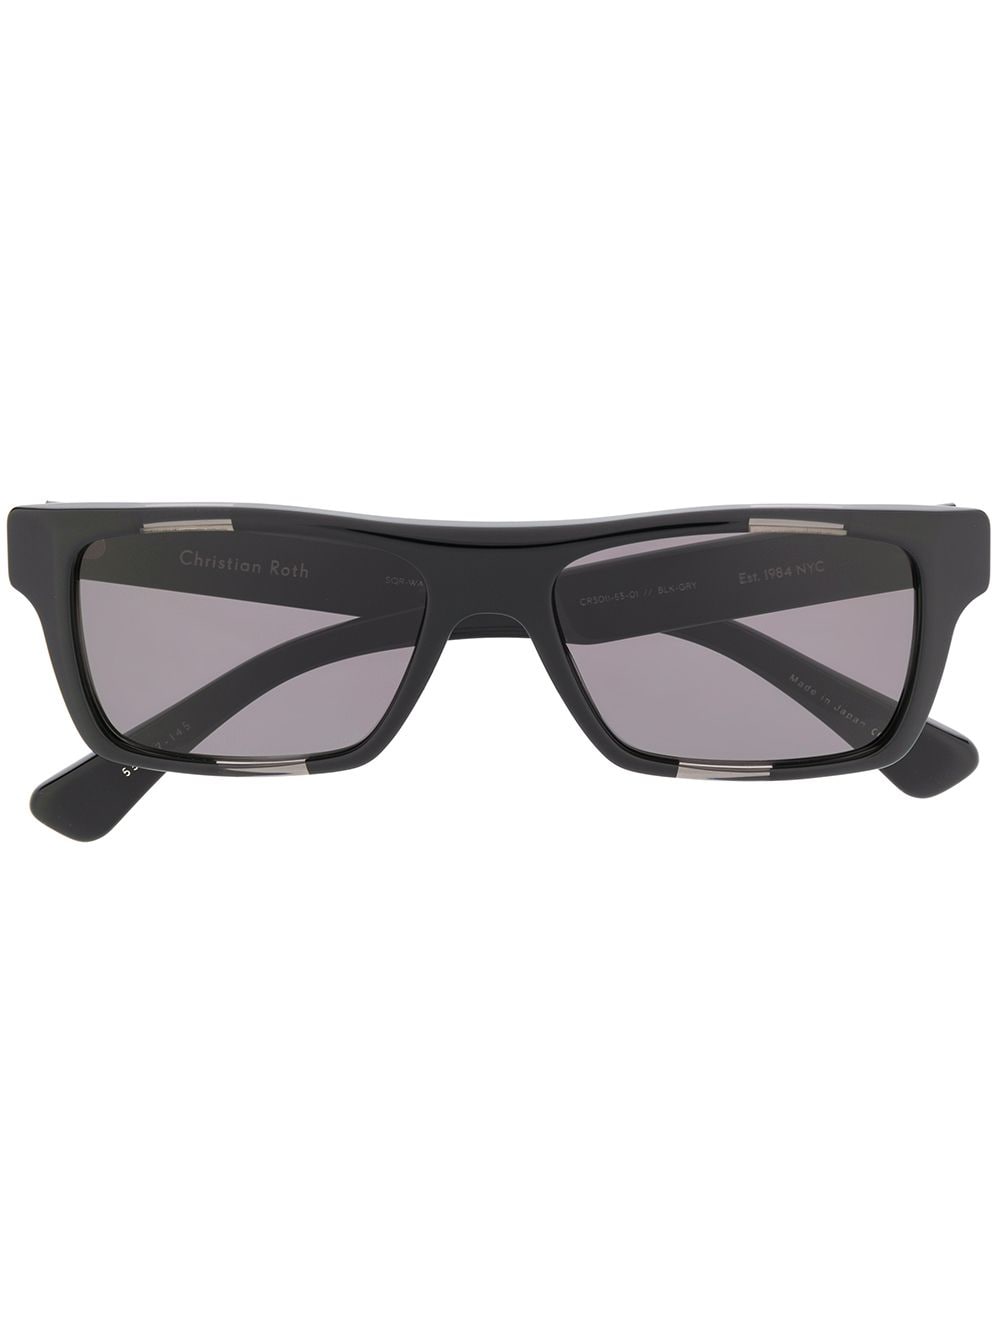 Christian Roth Rectangular Frame Sunglasses In Black